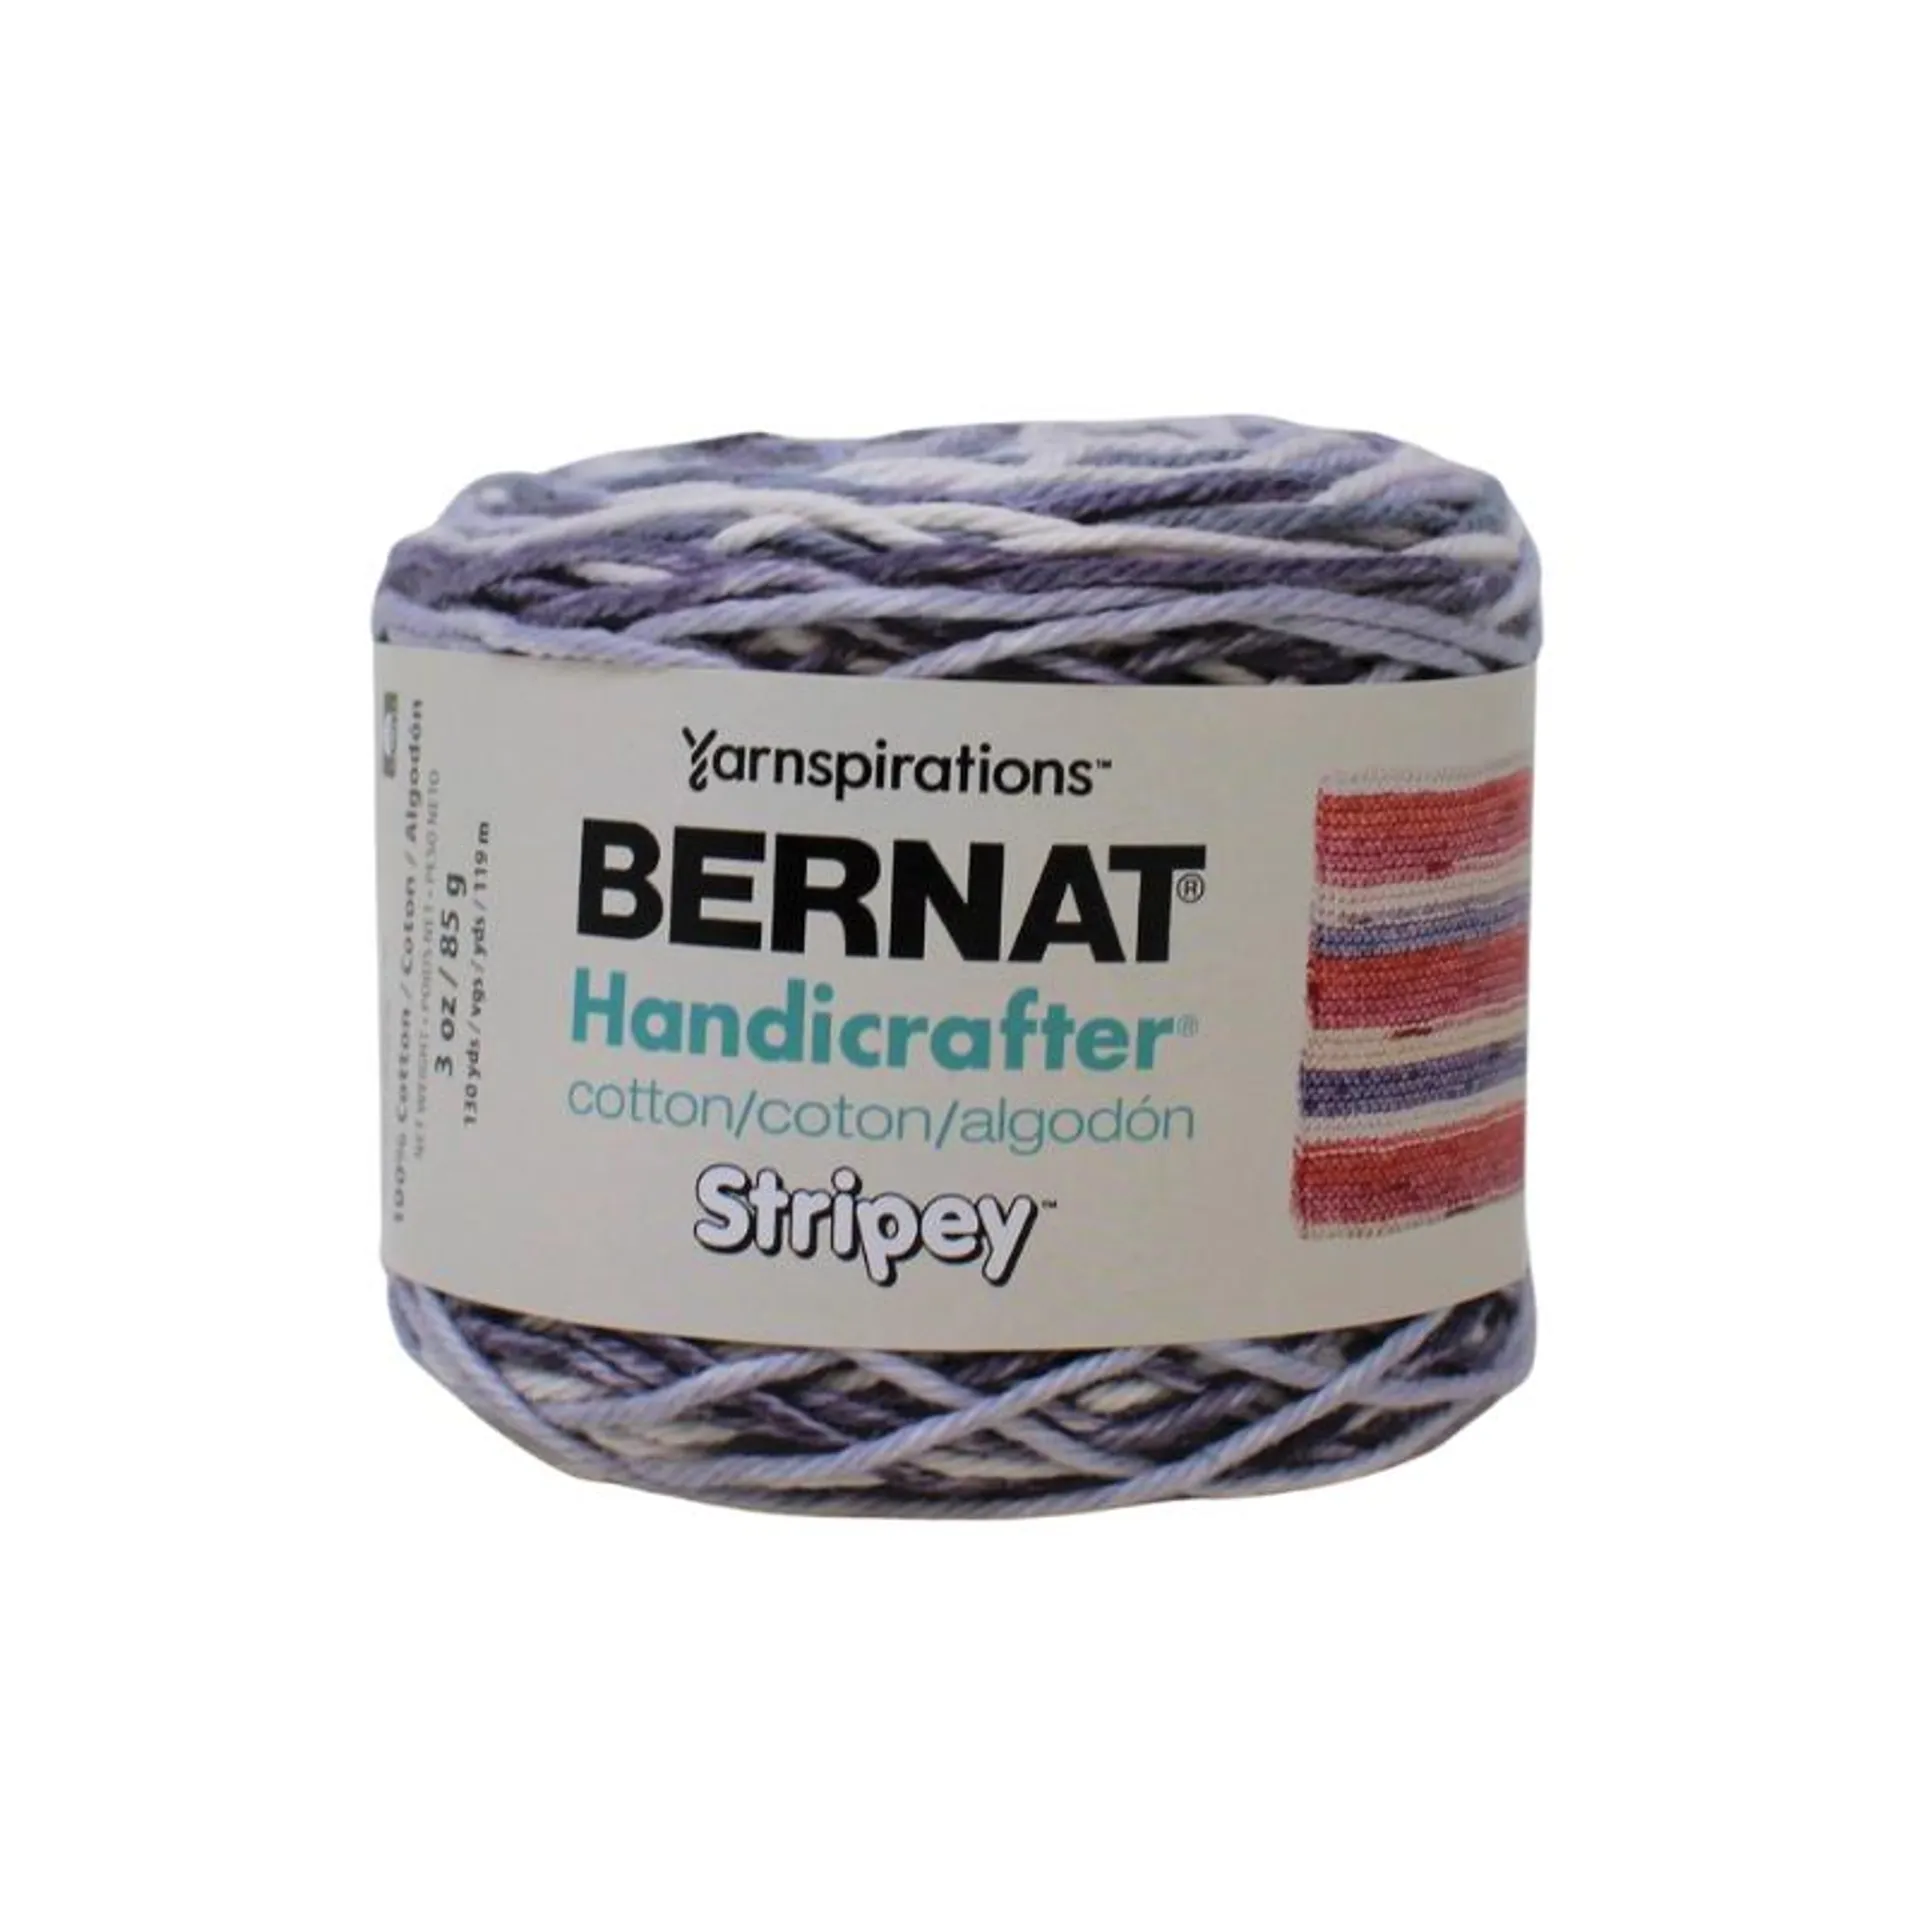 Handicrafter Stripey - 85g - Bernat